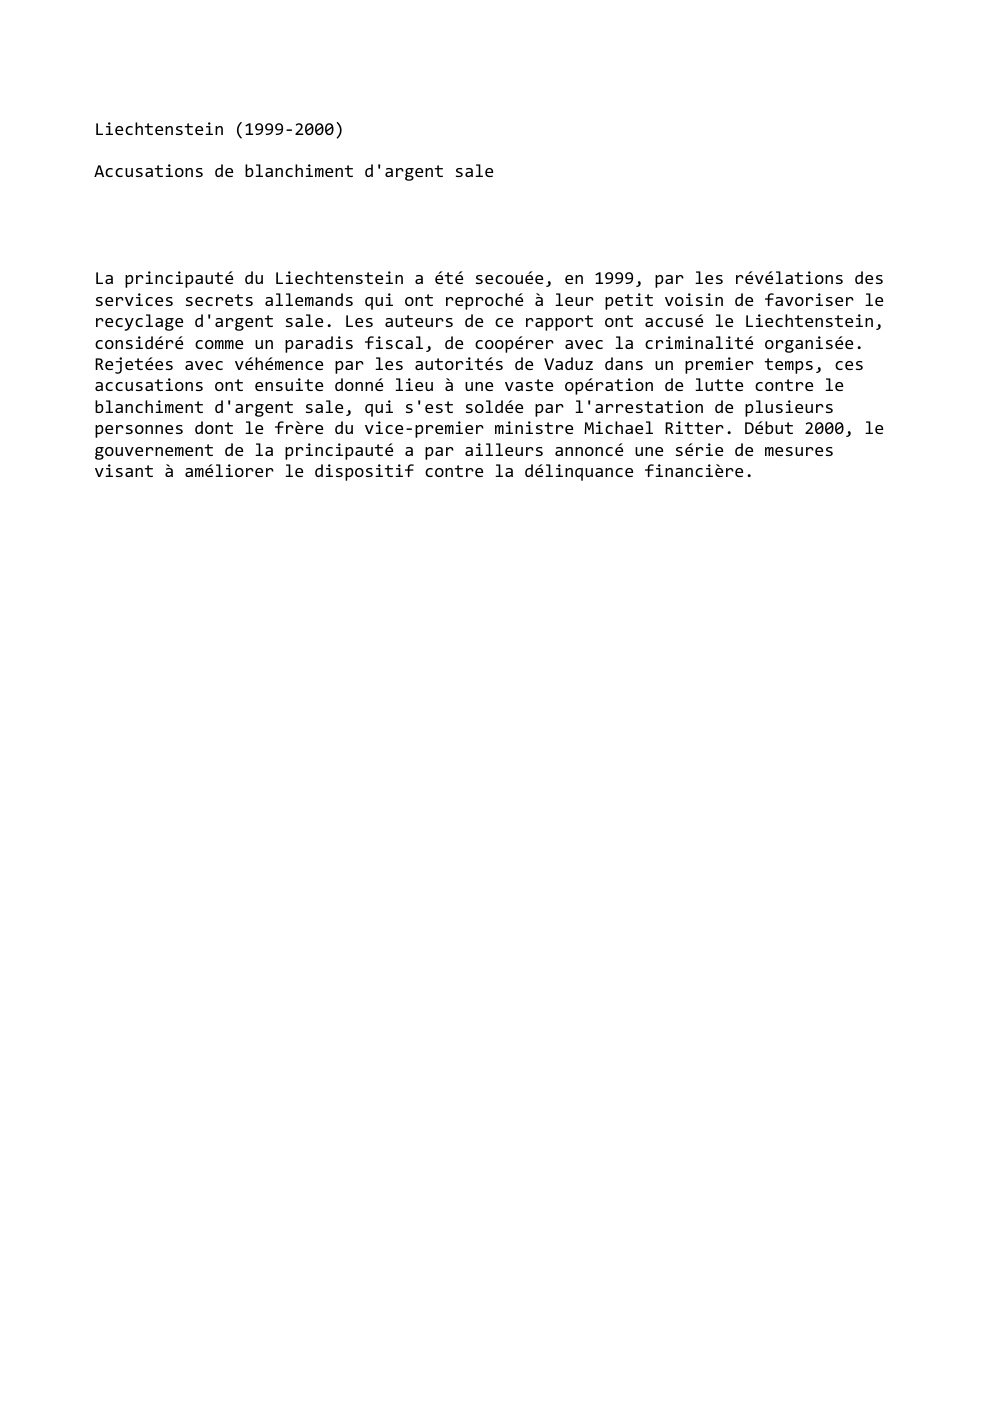 Prévisualisation du document Liechtenstein (1999-2000)
Accusations de blanchiment d'argent sale

La principauté du Liechtenstein a été secouée, en 1999, par les révélations des...